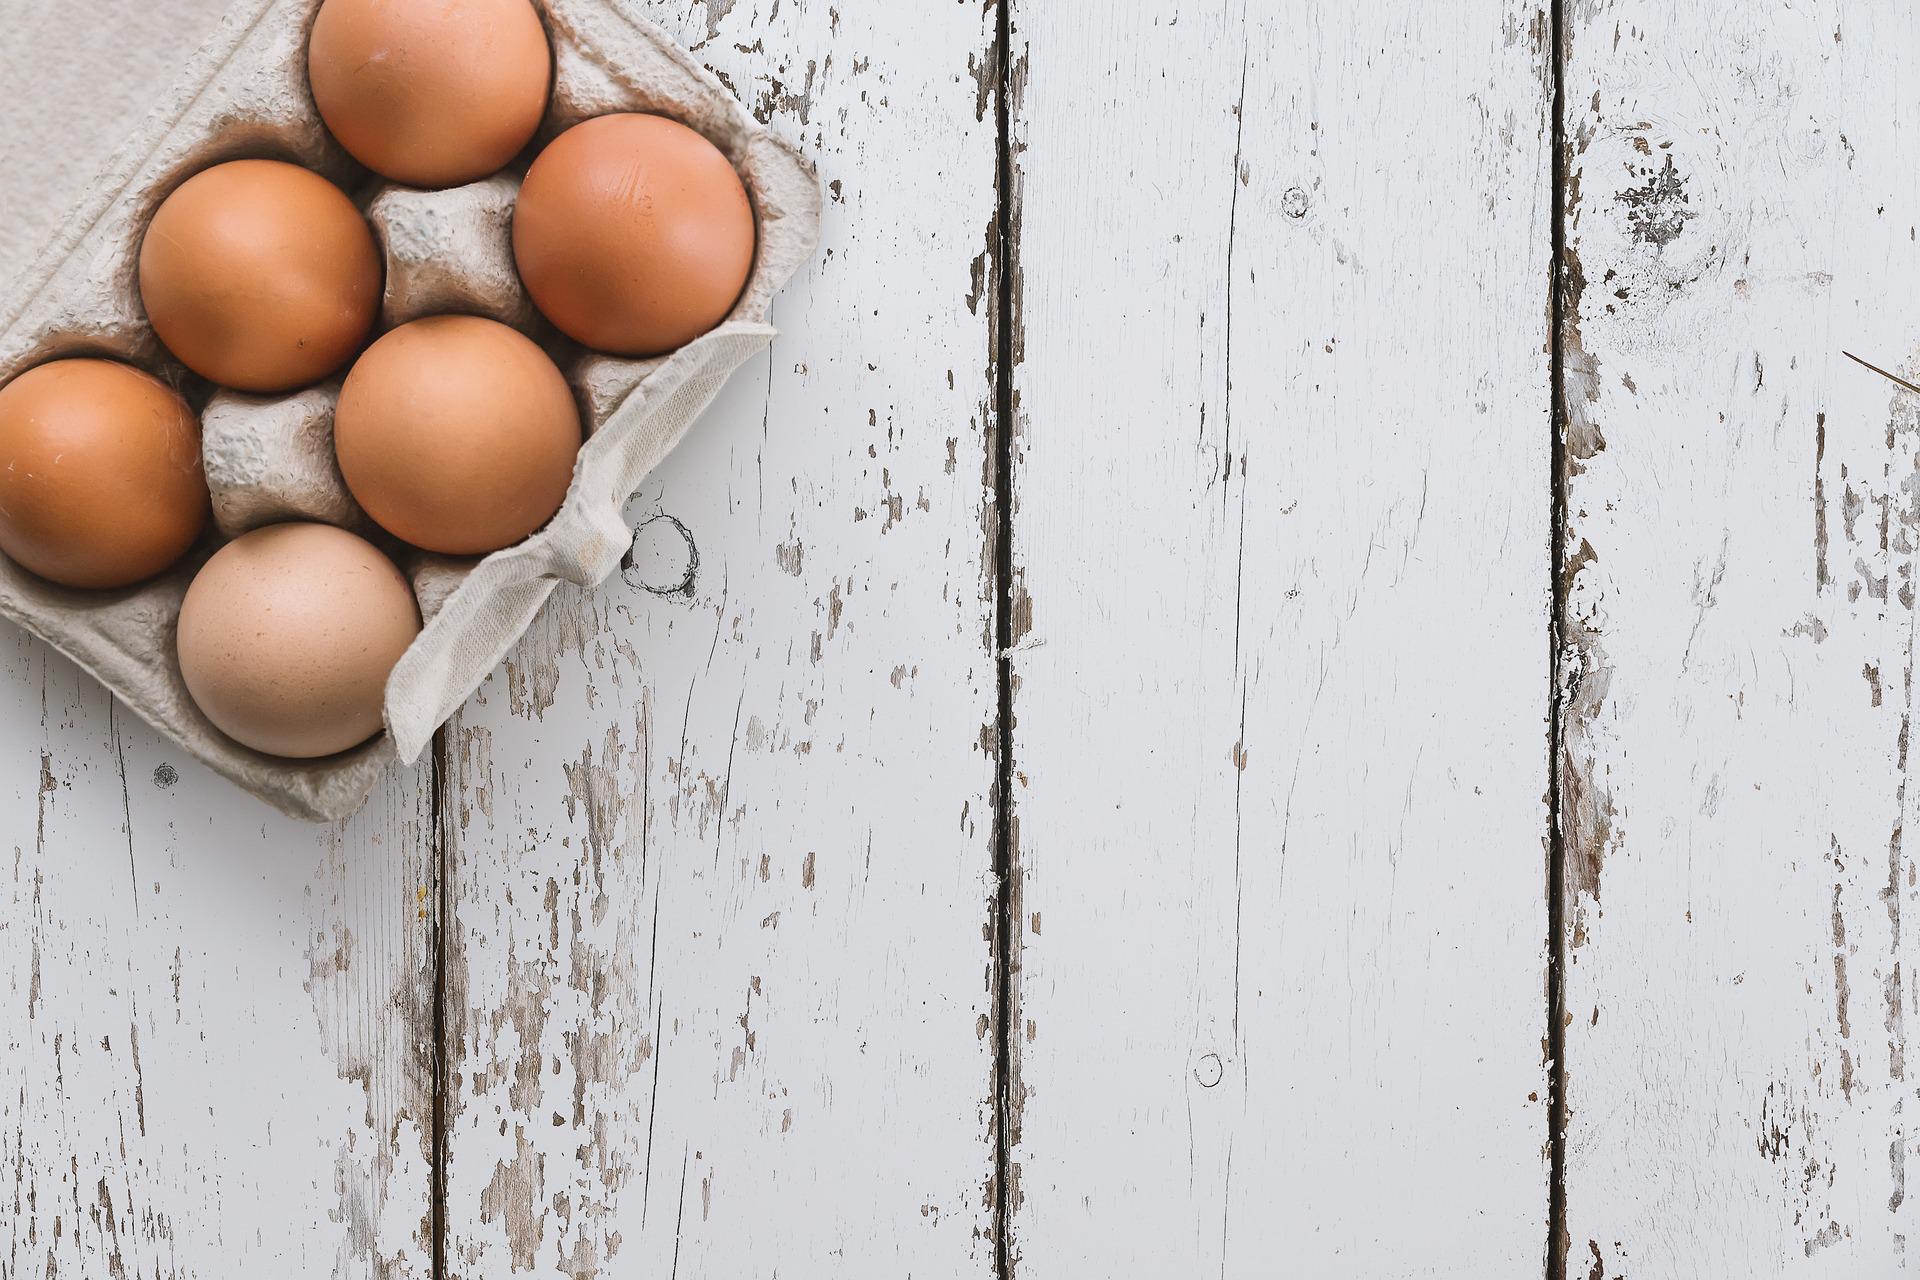 ILUSTRASI: Warna telur ayam. (Pixabay)